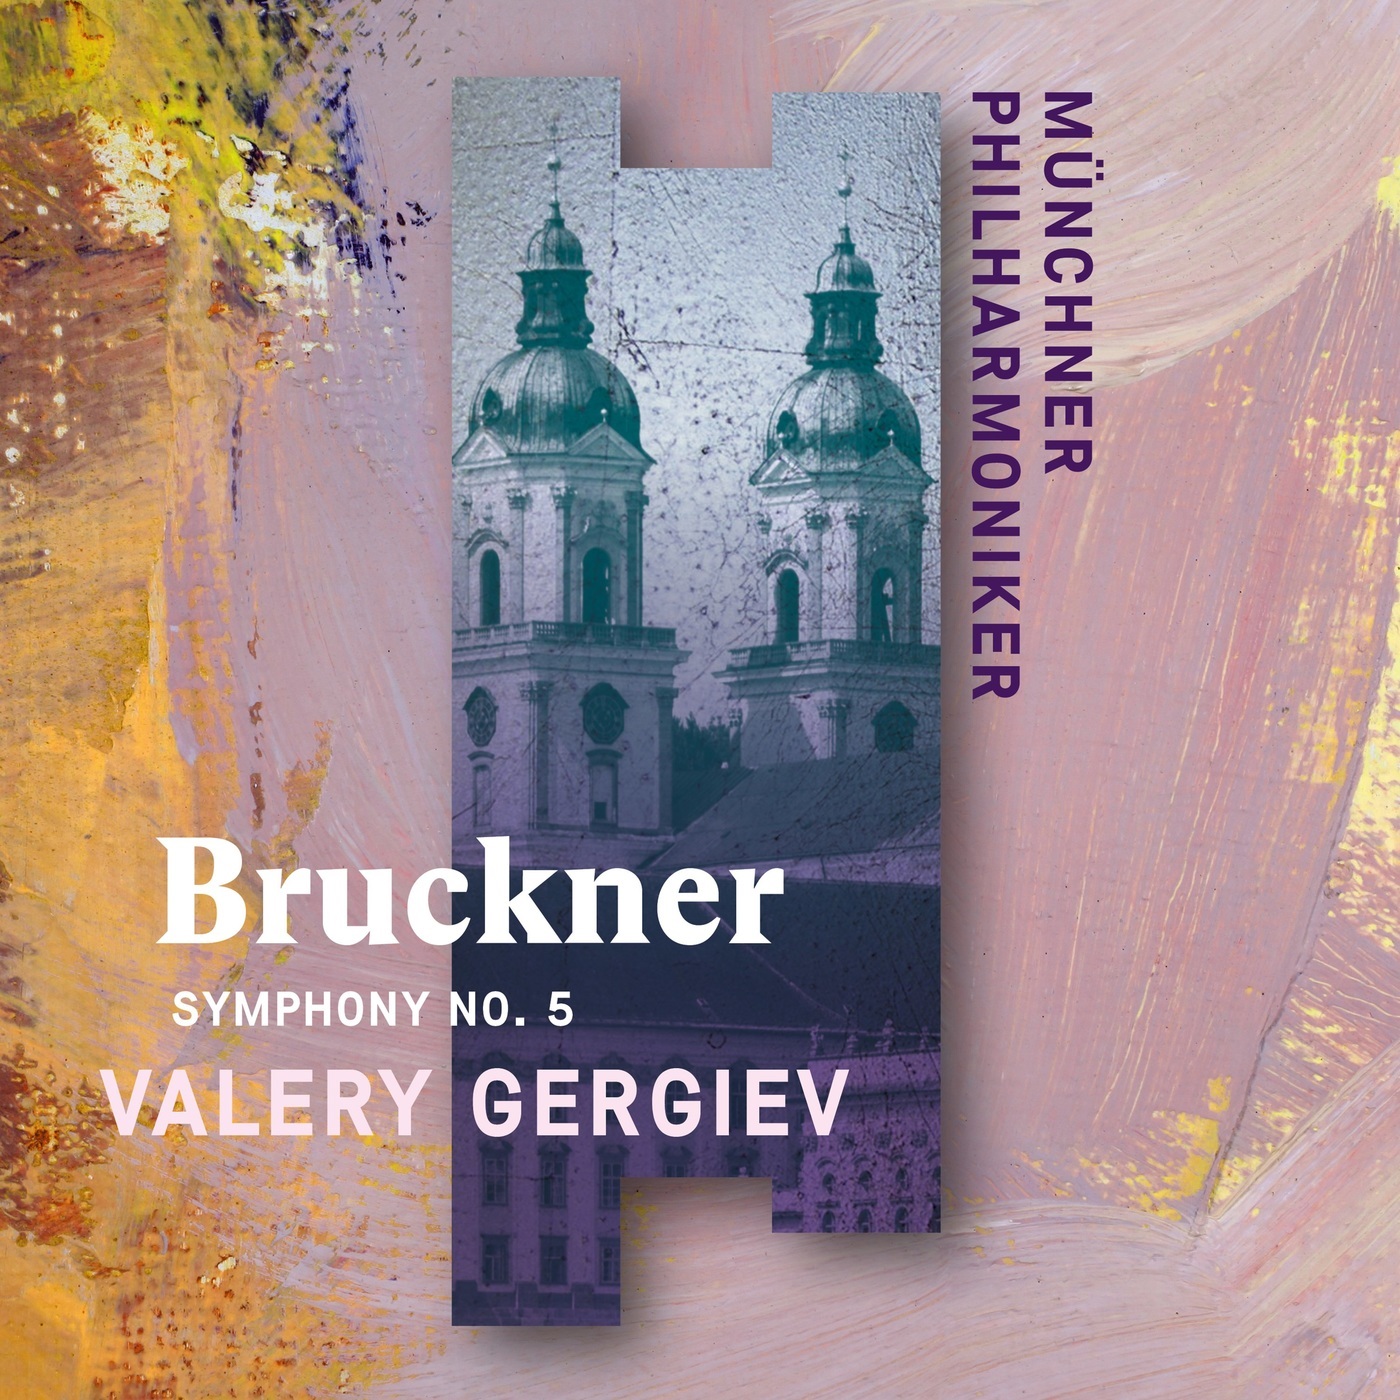 Valery Gergiev & Munich Philharmonic – Bruckner: Symphony No. 5 (2020) [FLAC 24bit/96kHz]